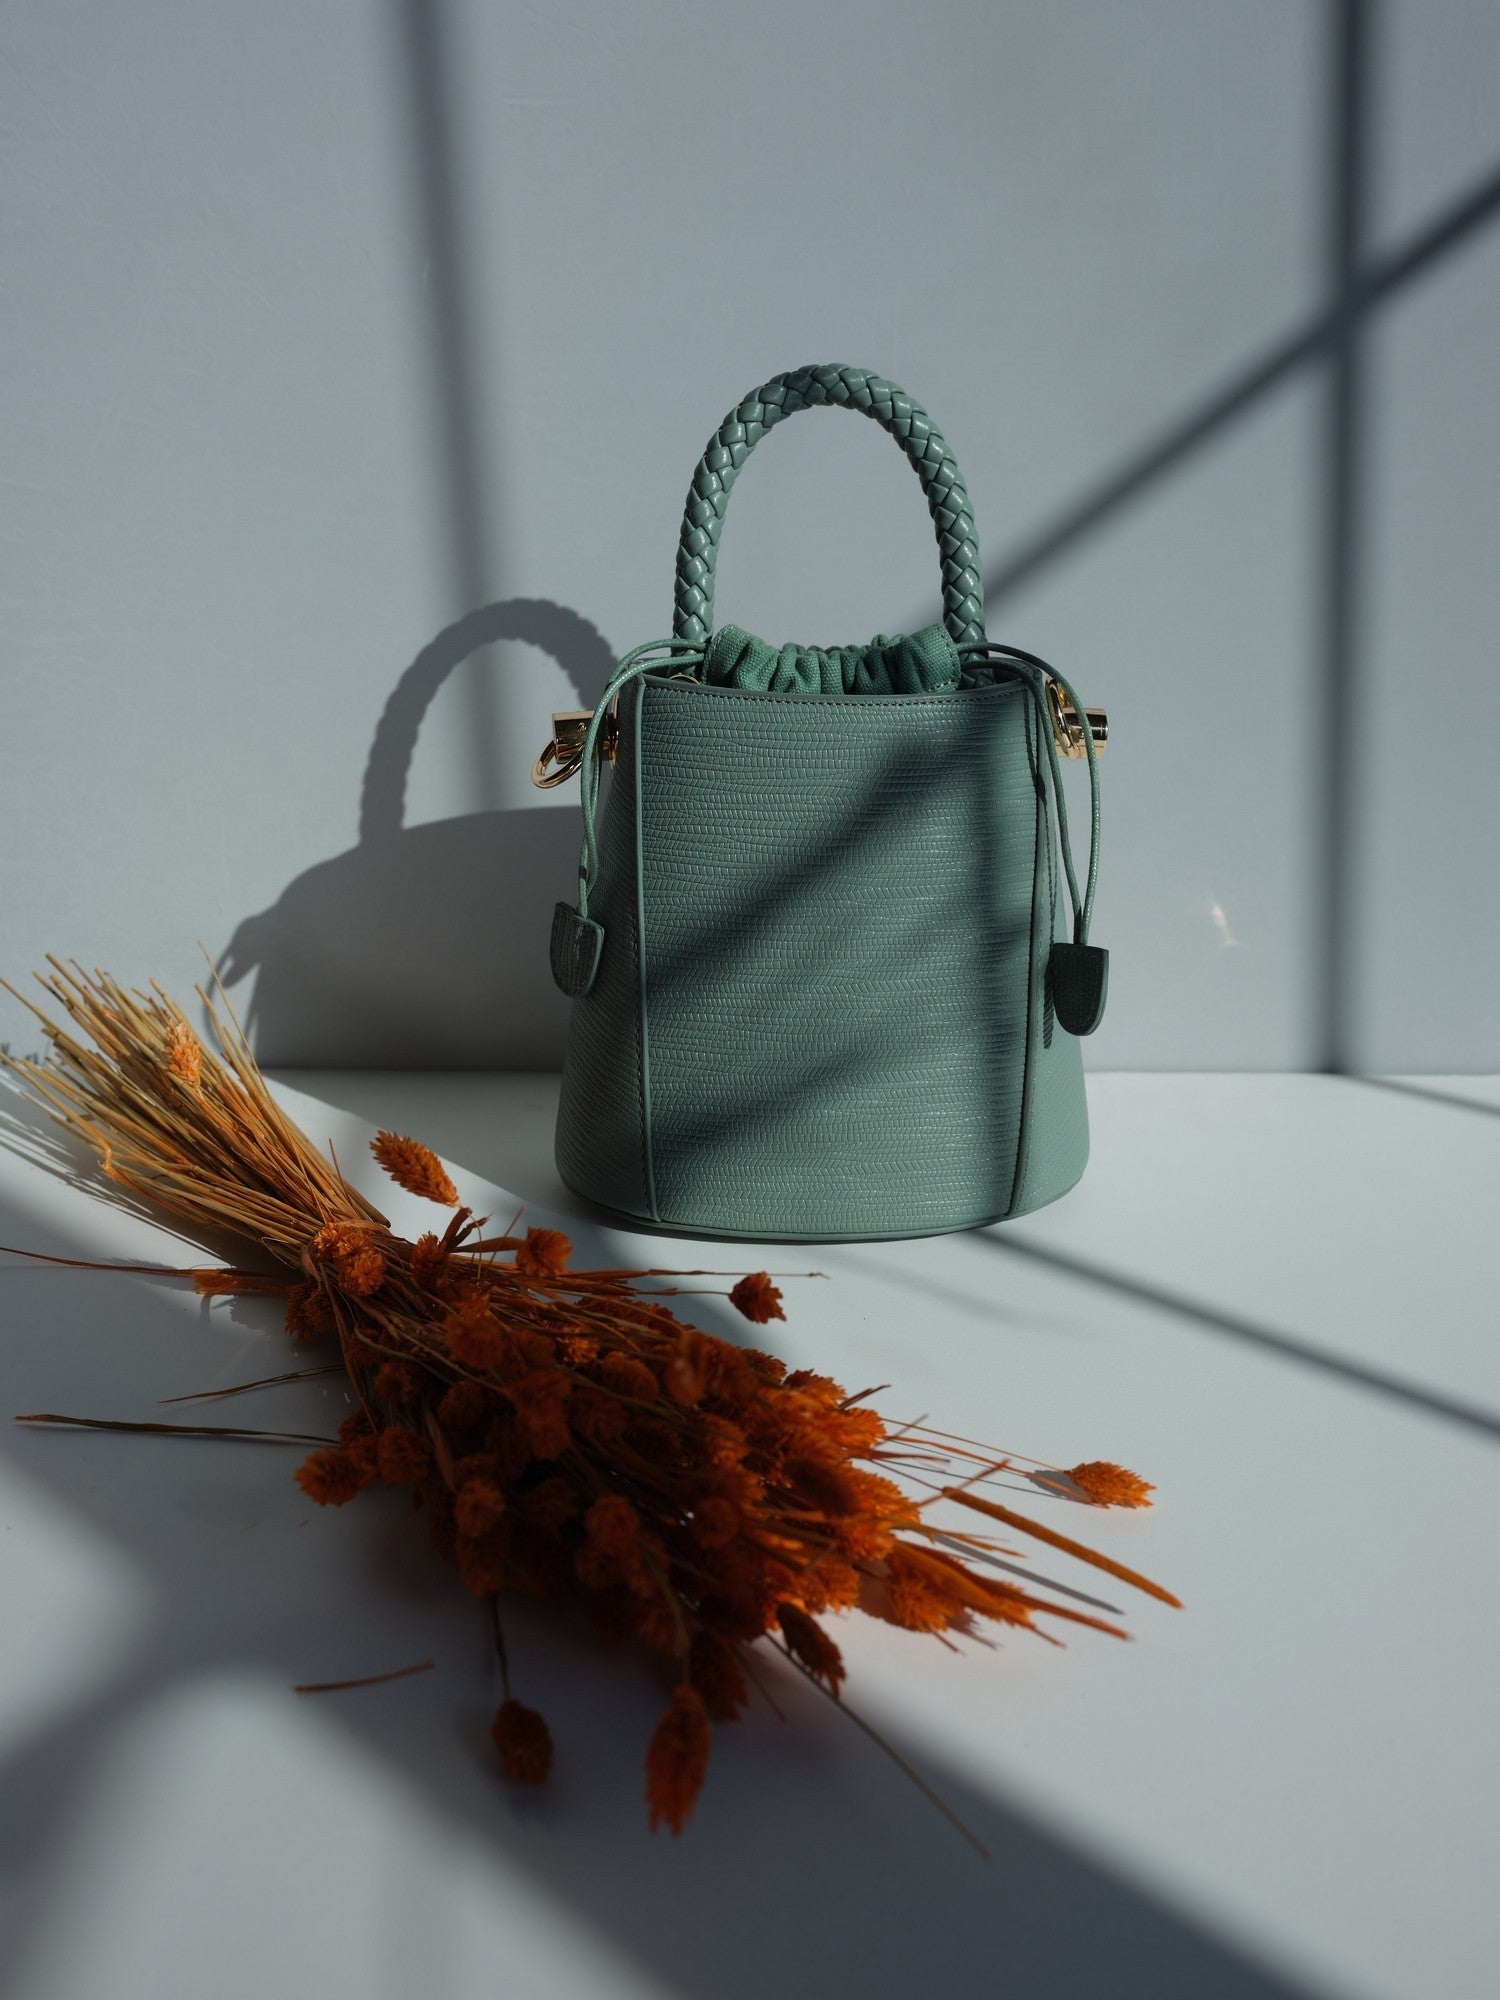 Small Green Bag - Fashion M.O.V